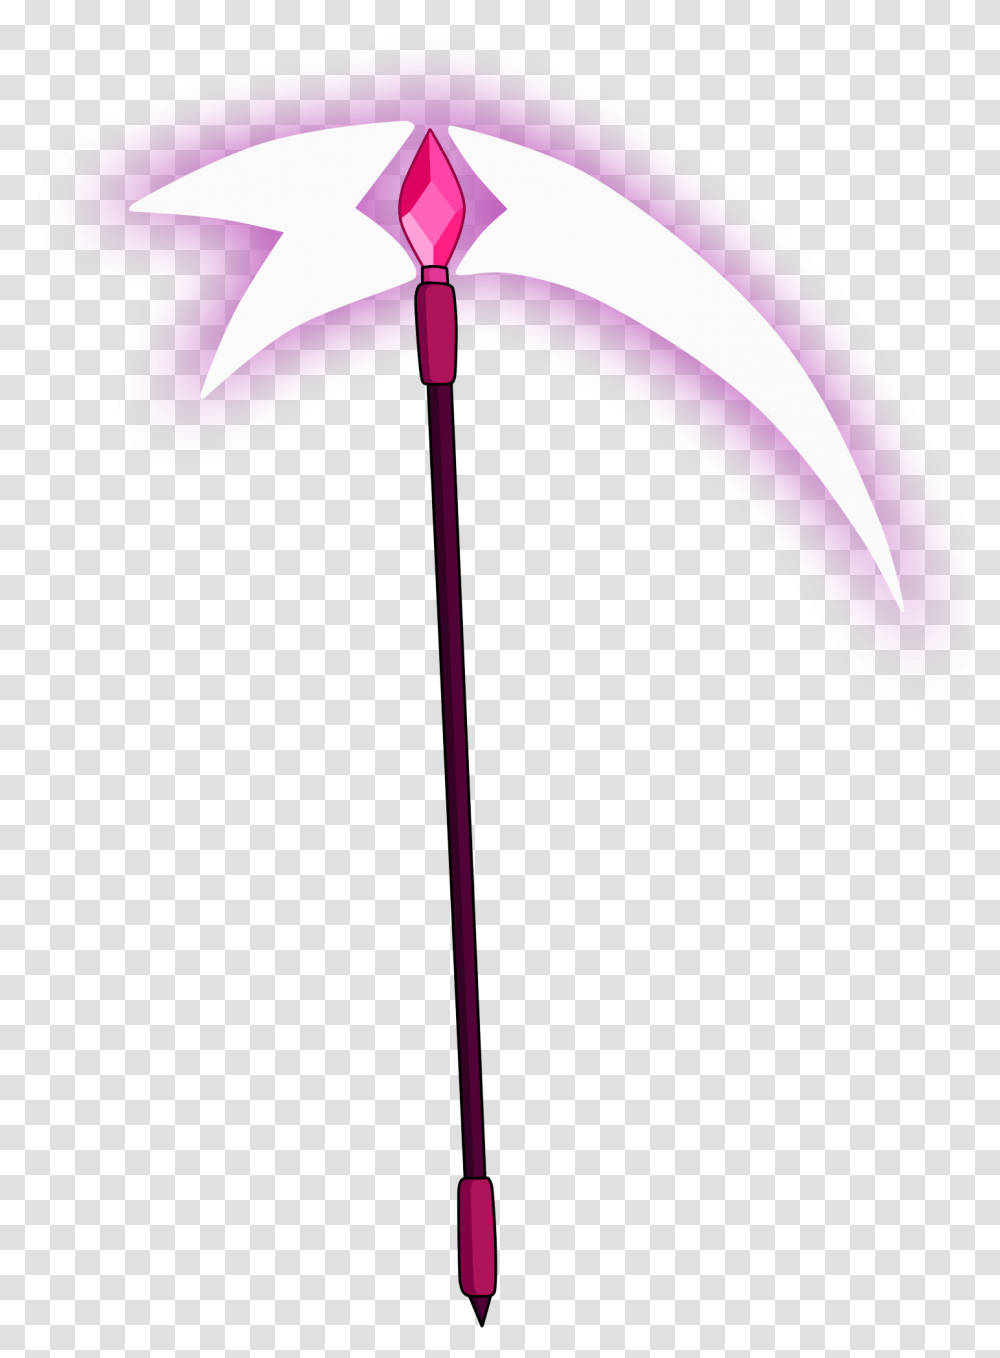 Steven Universe Spinel Weapon, Purple, Lamp Transparent Png